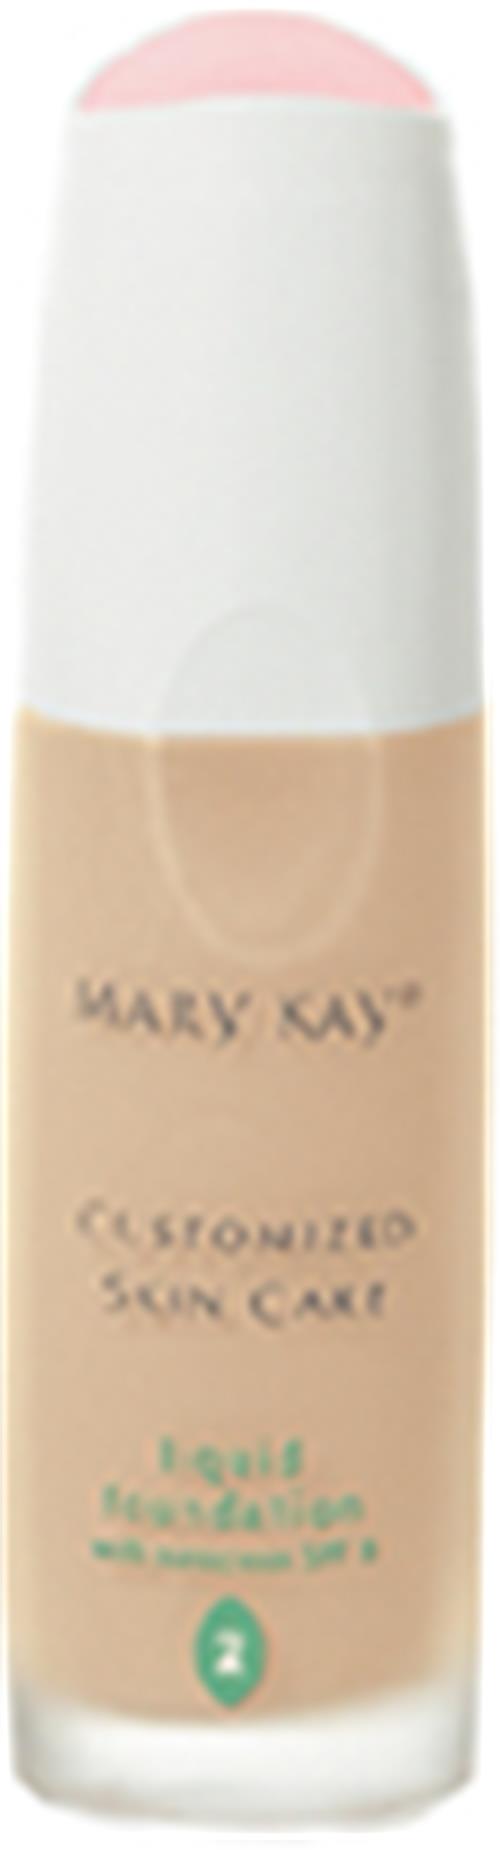 玫琳凯MaryKay化妆品粉底乳液柔象牙